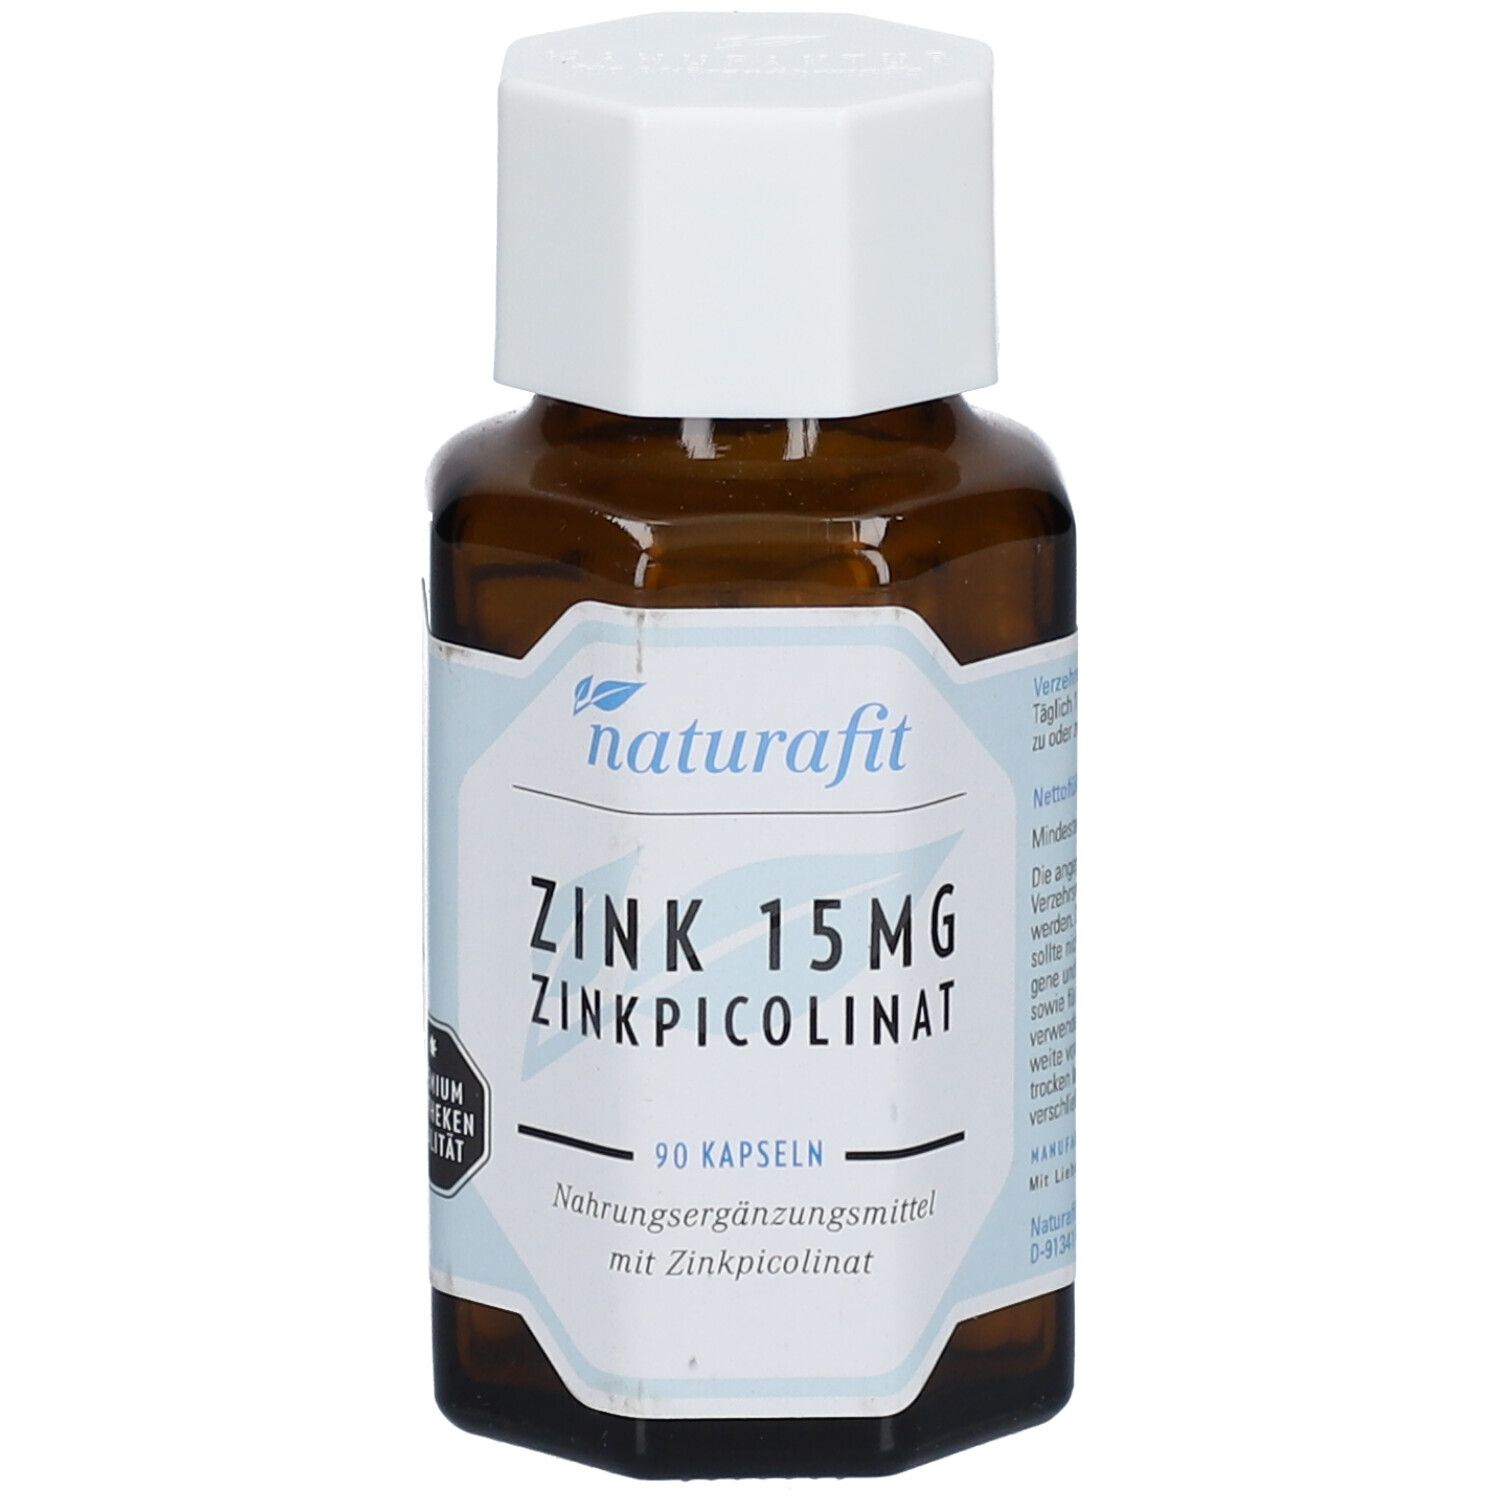 naturafit ZINK 15 mg ZINKPICOLINAT